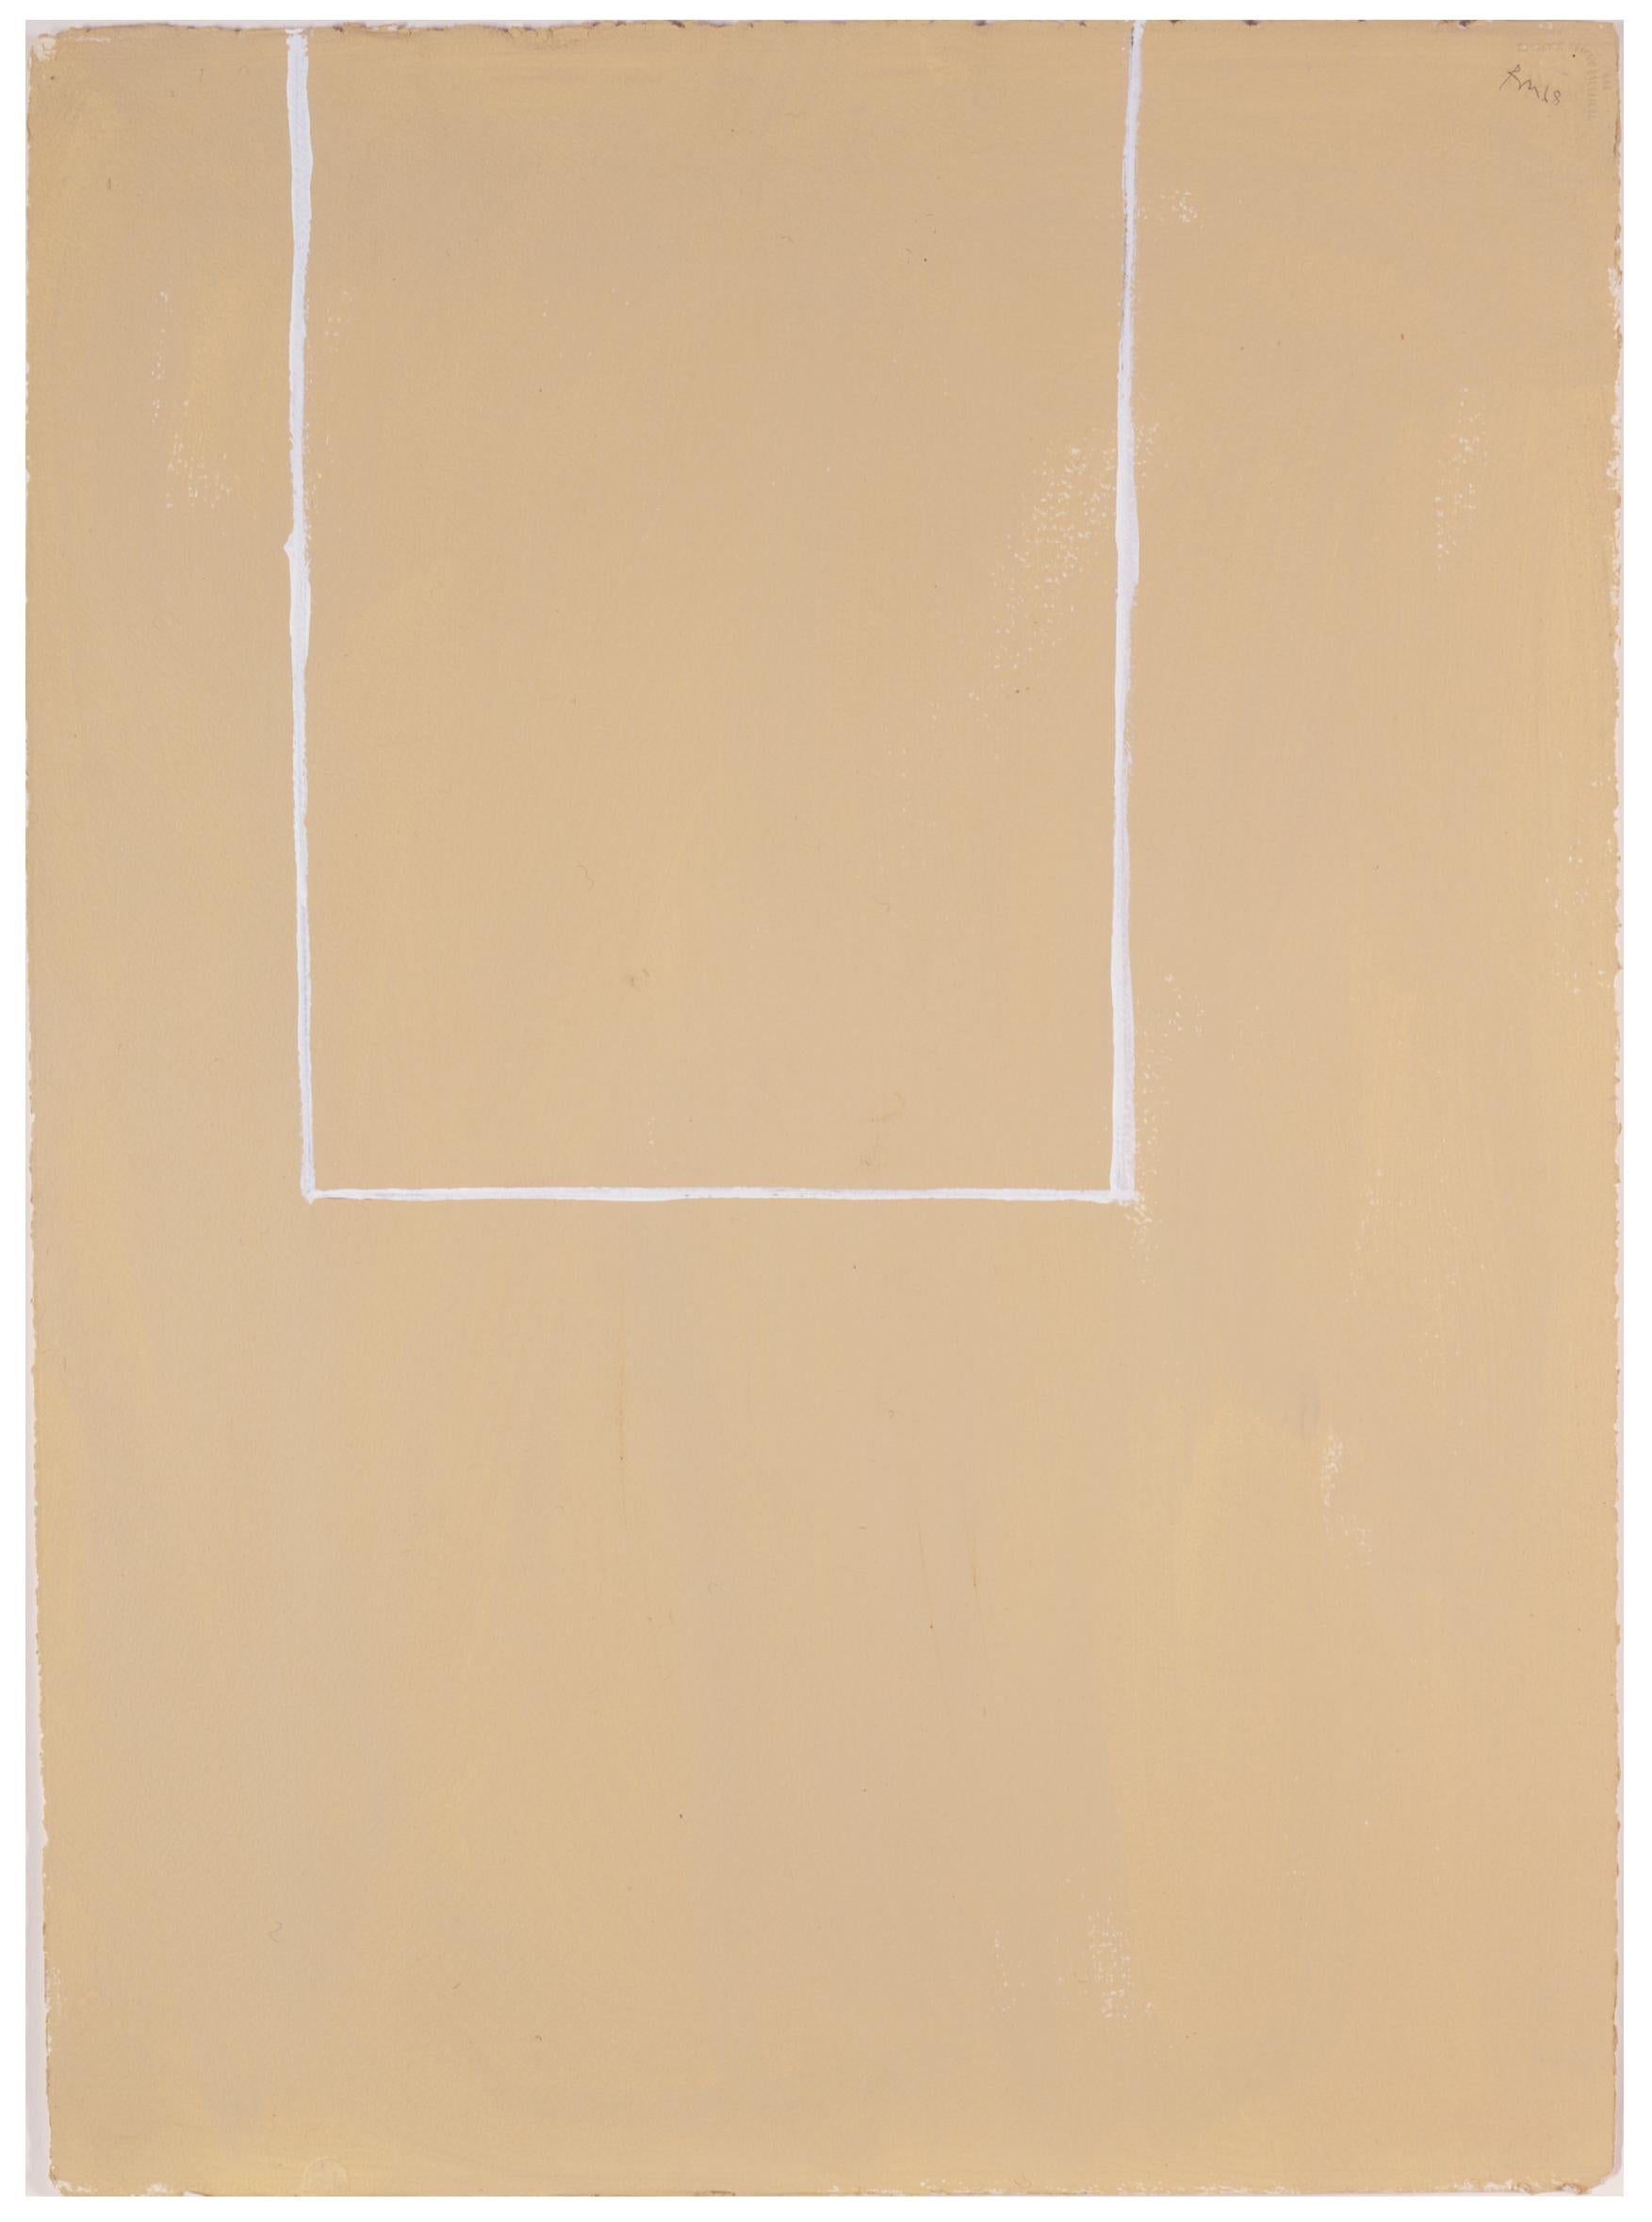 Robert Motherwell Abstract Painting – Open Study (Weiße Linie auf Beige Nr. 2)